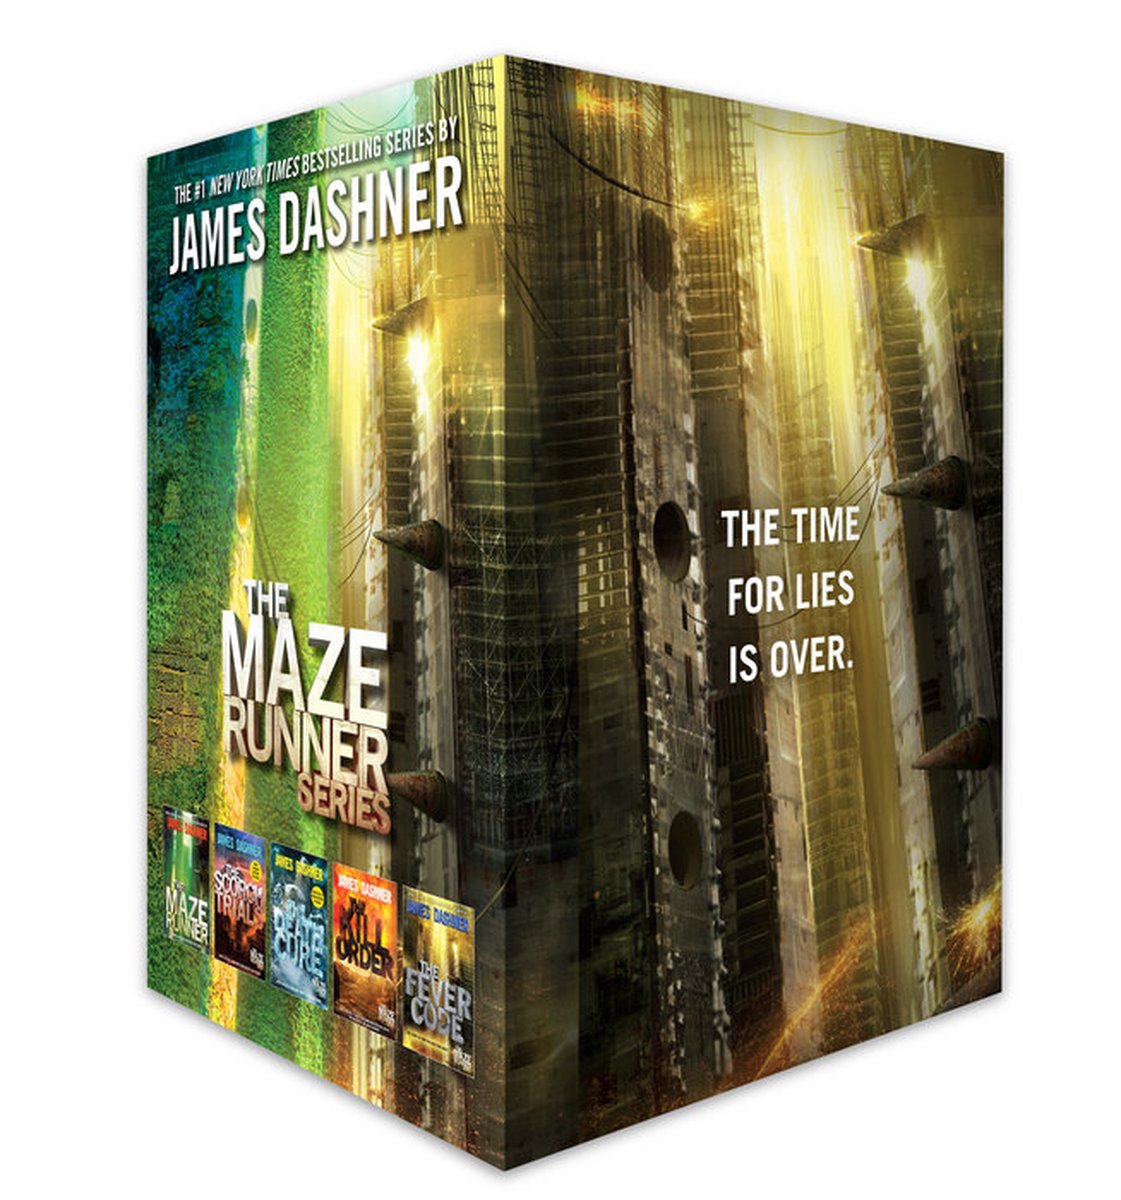 The Maze Runner Series - James Dashner